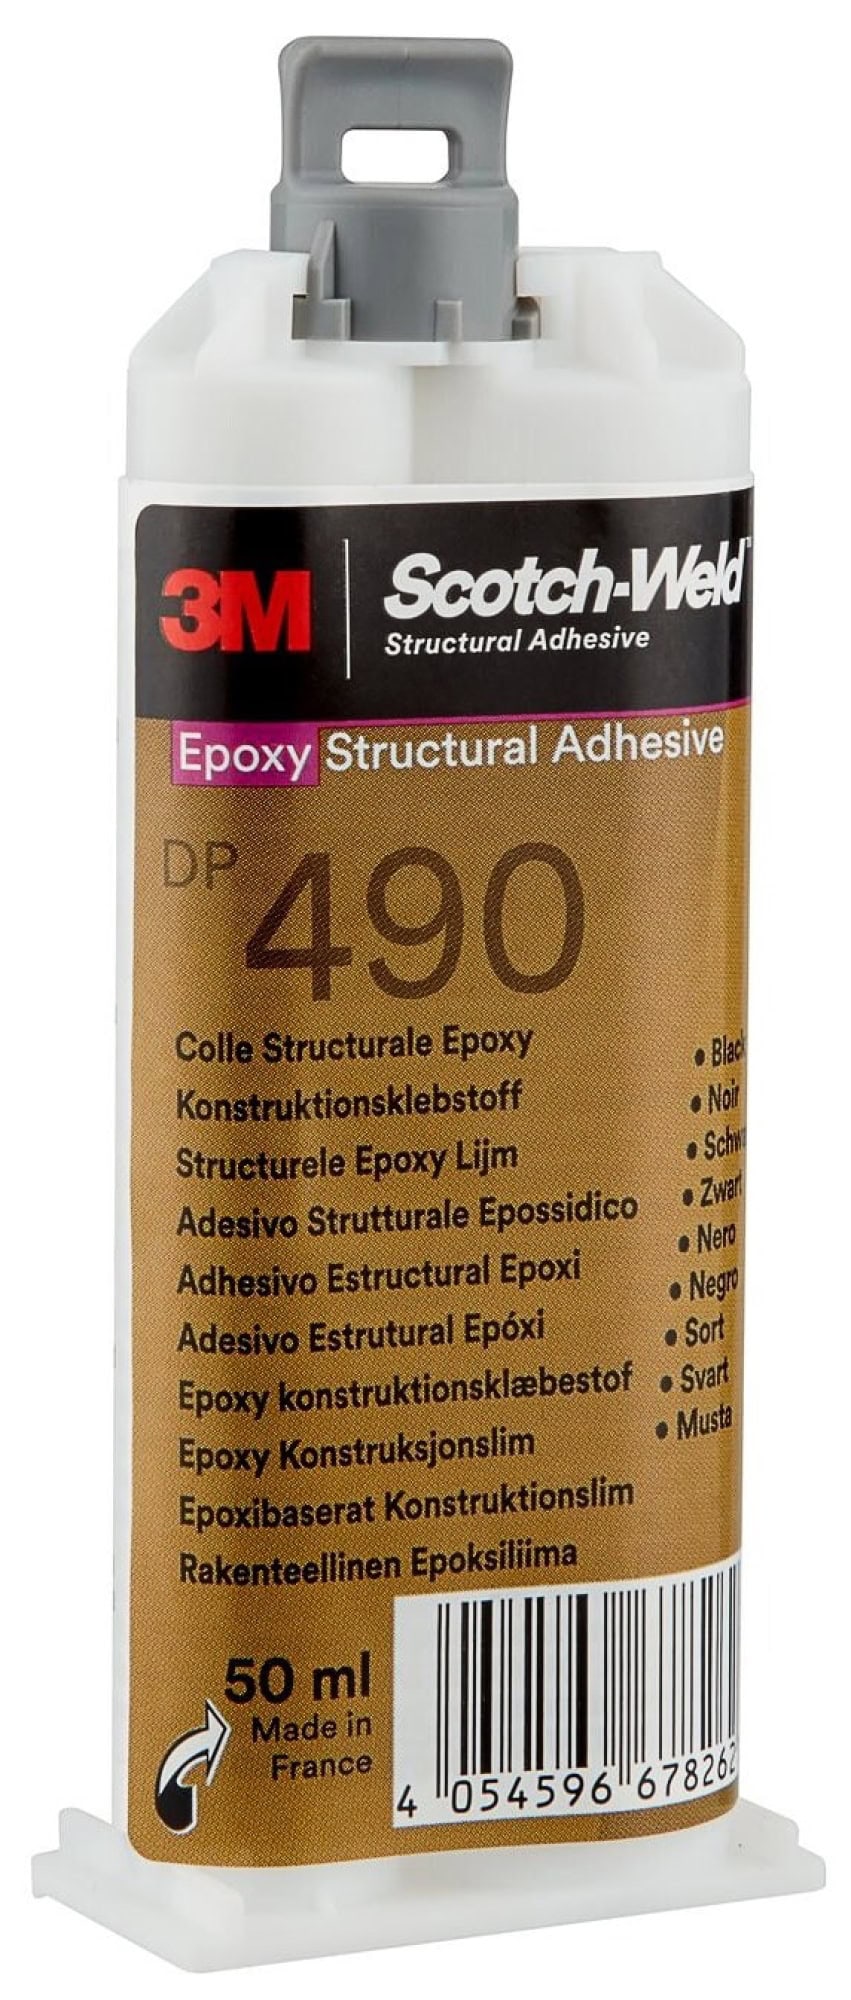 3M™ Scotch-Weld™ DP 490, 50 ml, Schwarz, 2-Komponenten-Konstruktionsklebstoff auf Epoxidharzbasis für das EPX System